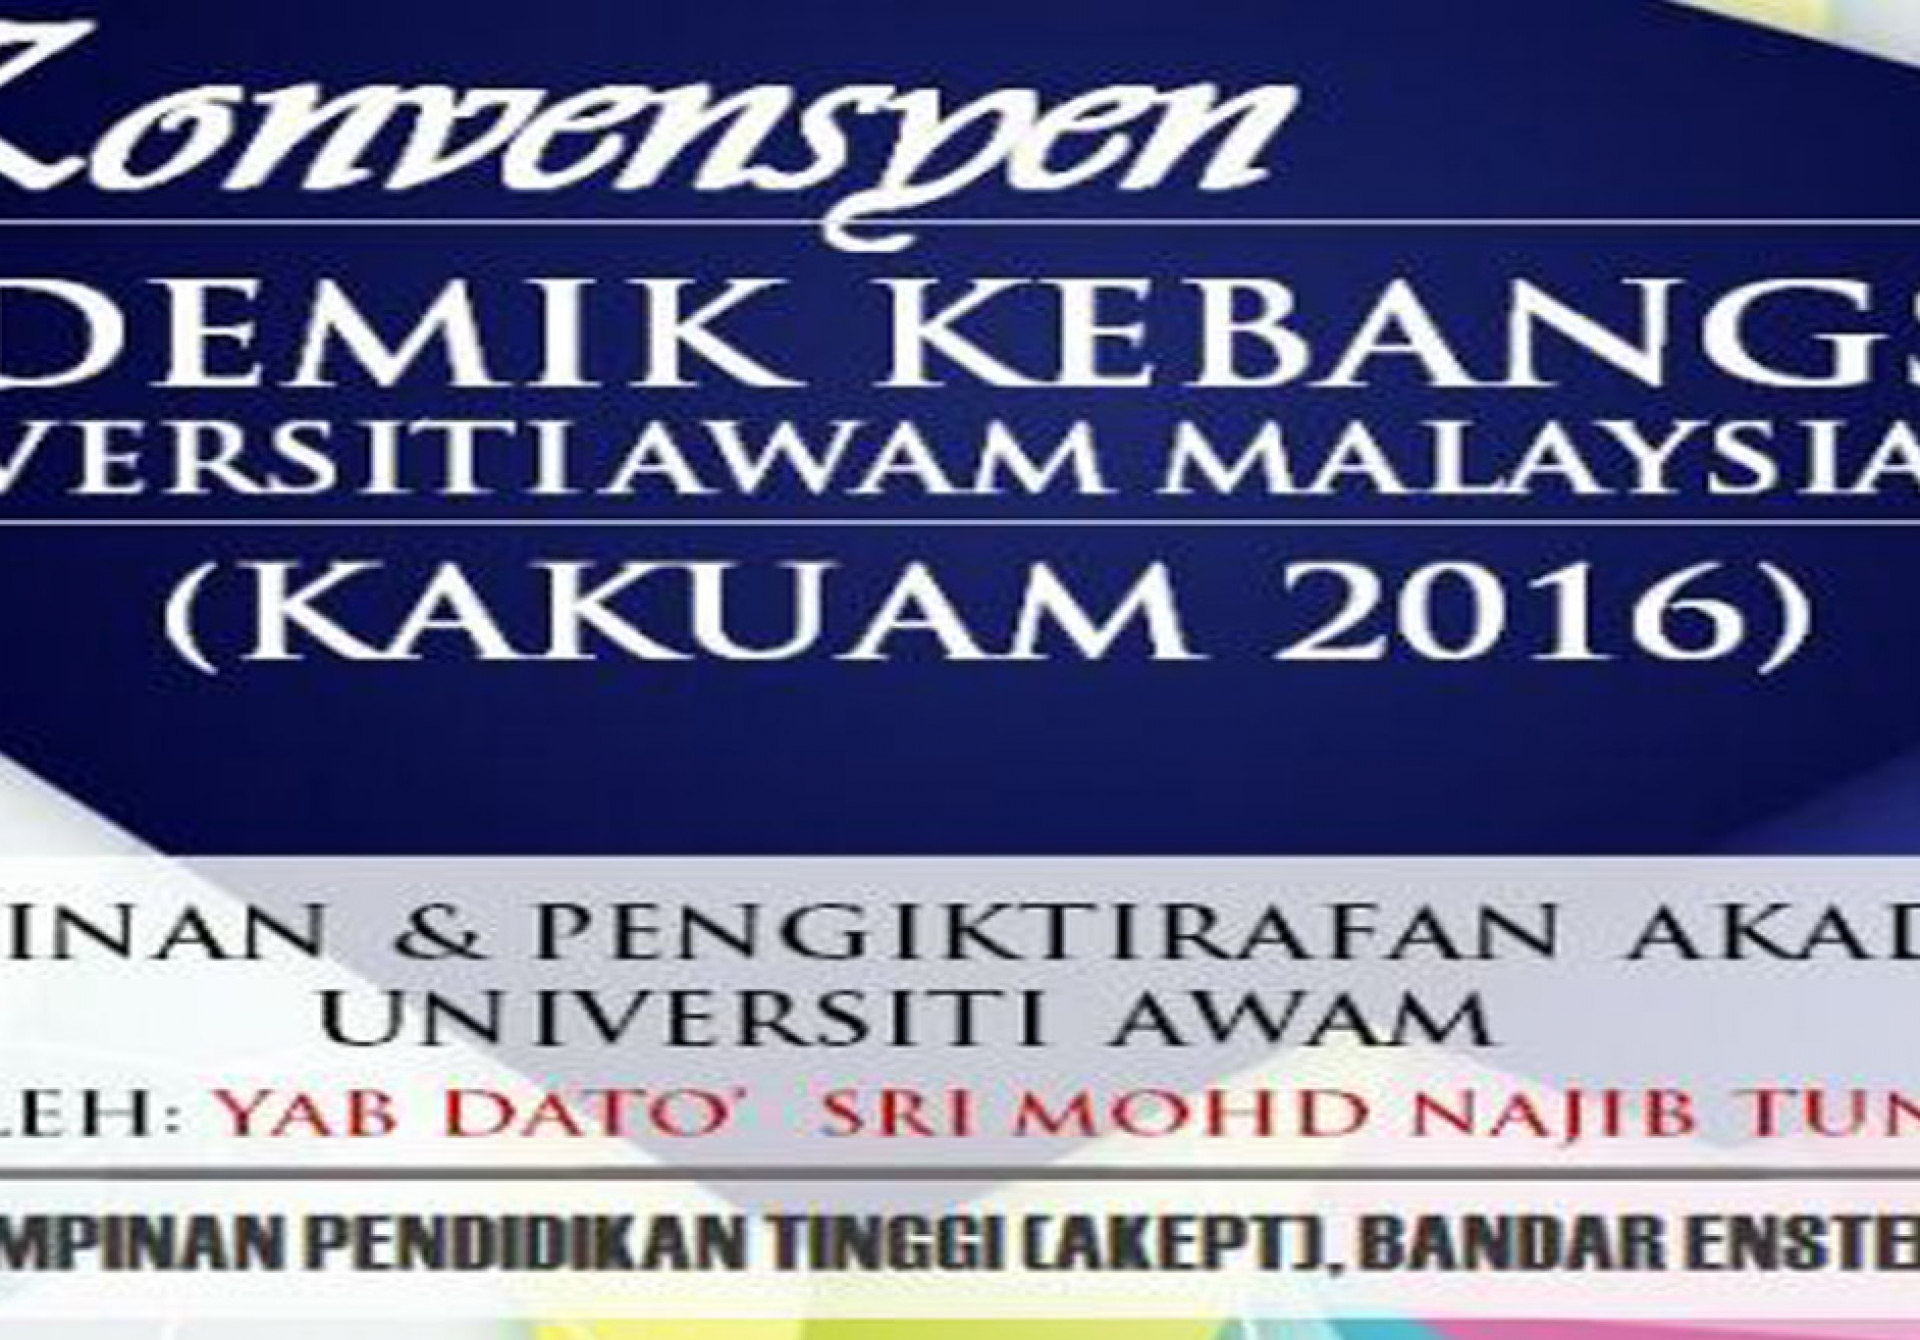 Konvensyen Akademik Kebangsaan Universiti Awam Malaysia (KAKUAM) 2016